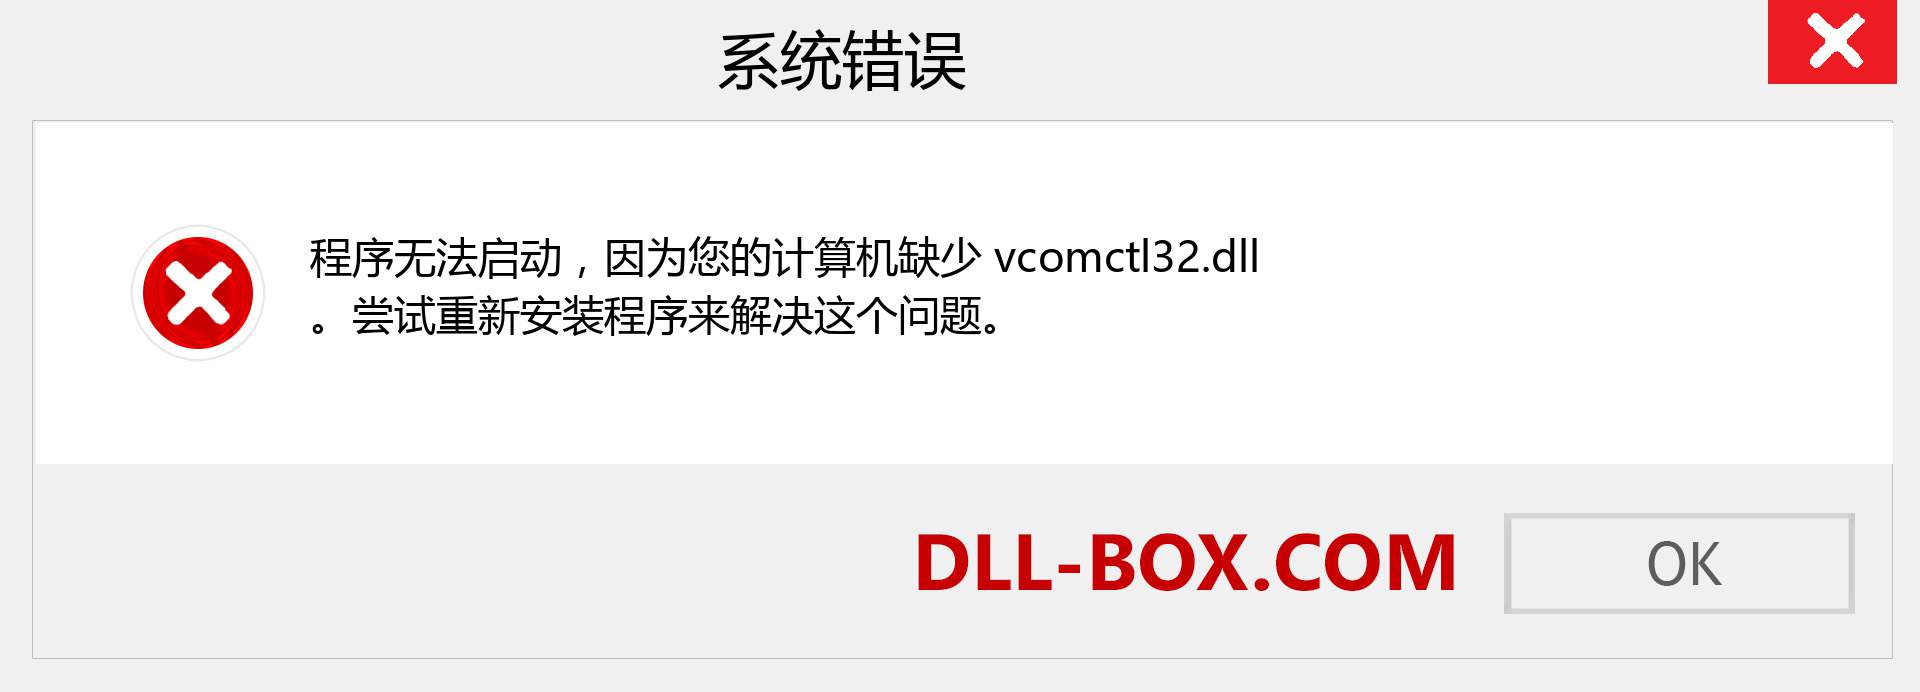 vcomctl32.dll 文件丢失？。 适用于 Windows 7、8、10 的下载 - 修复 Windows、照片、图像上的 vcomctl32 dll 丢失错误